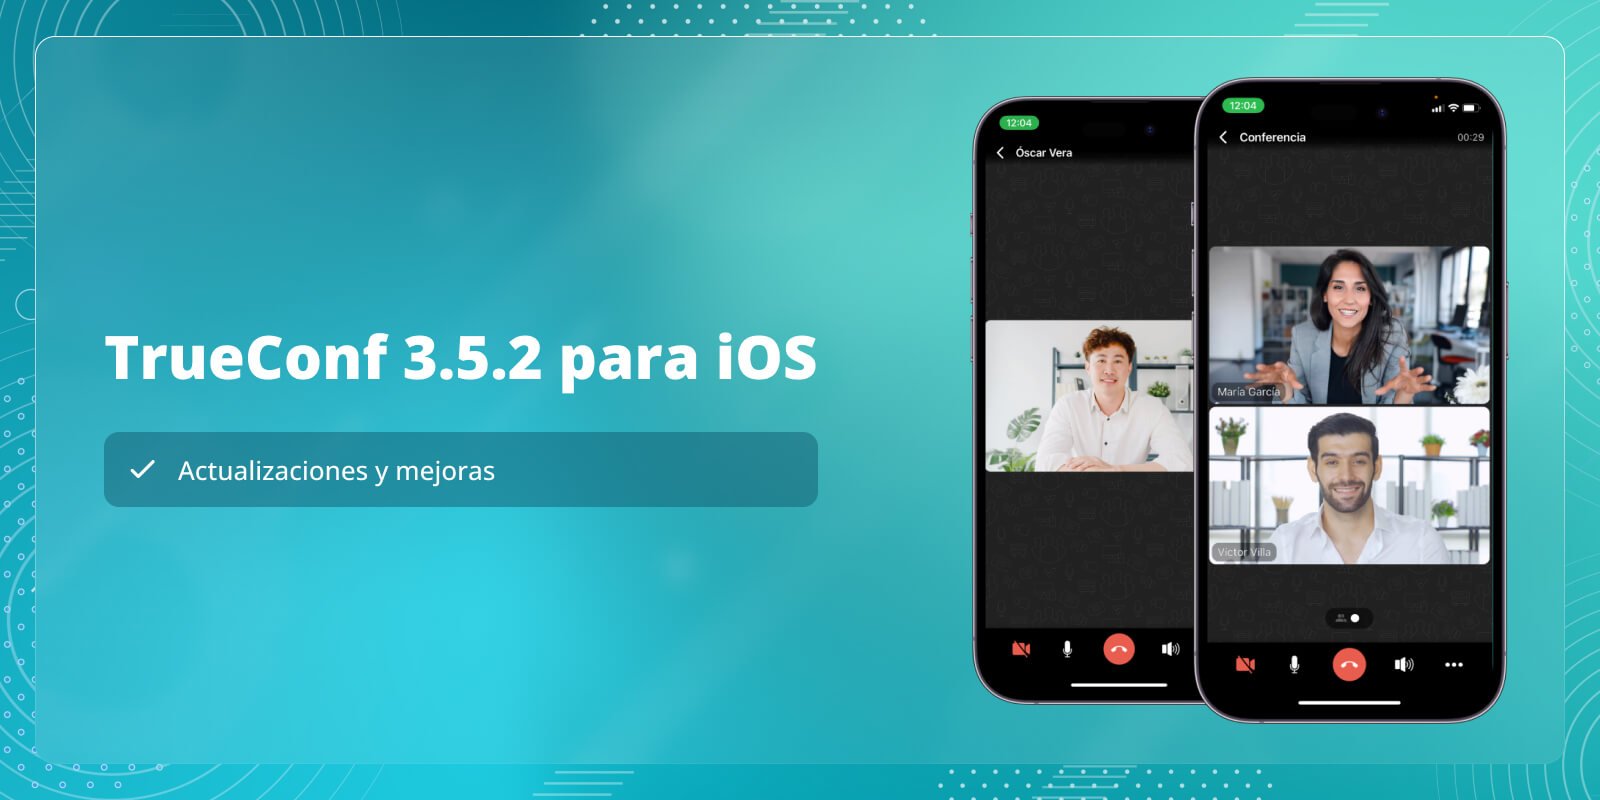 TrueConf 3.5.2 para iOS: actualizaciones y mejoras 1